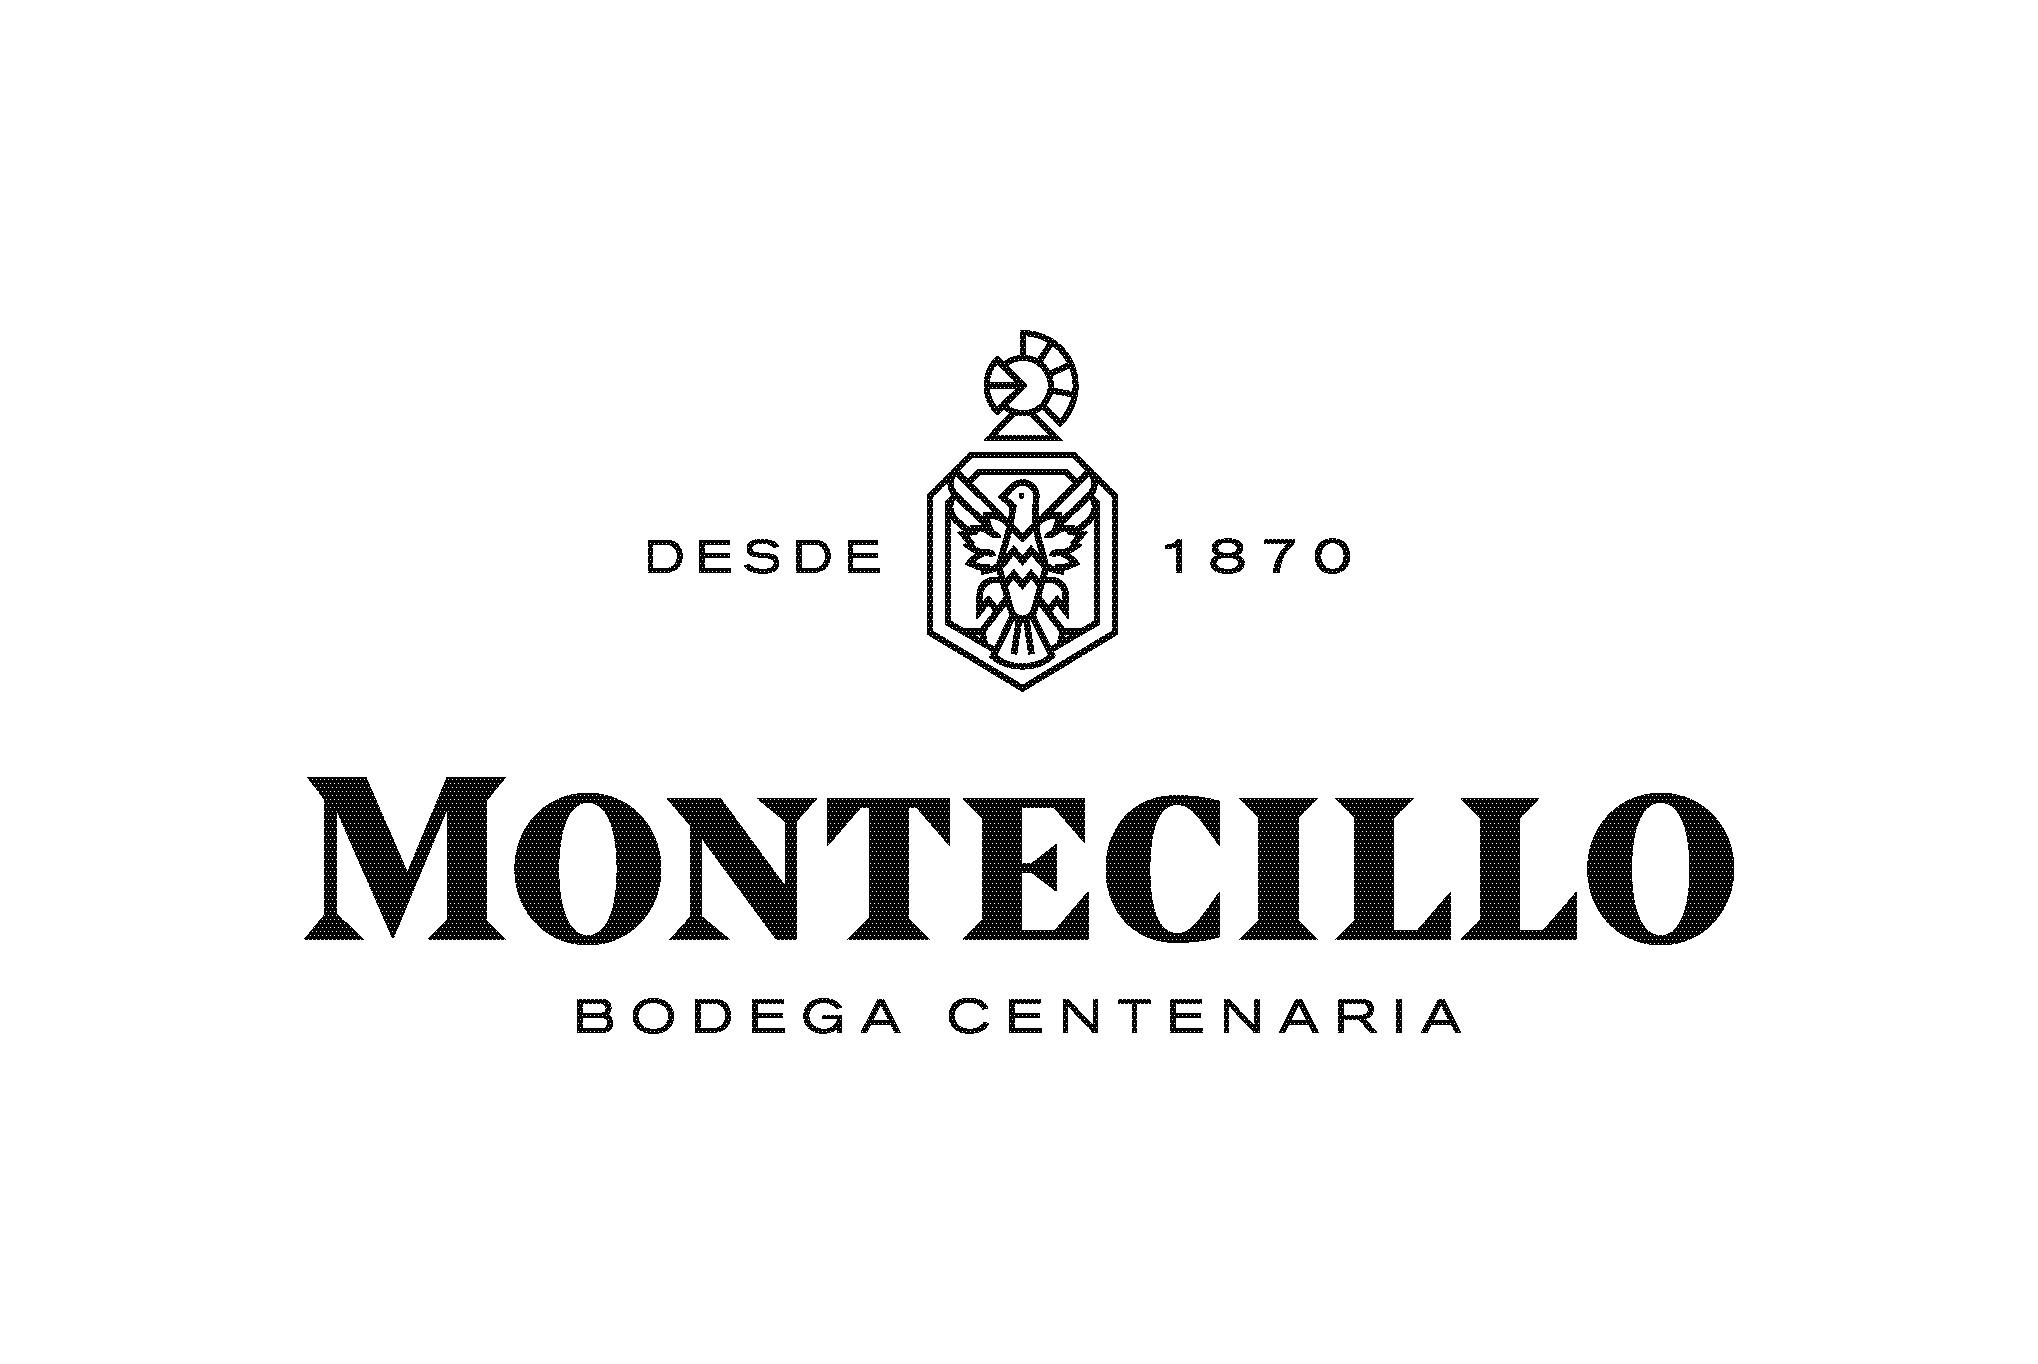 Bodegas Montecillo